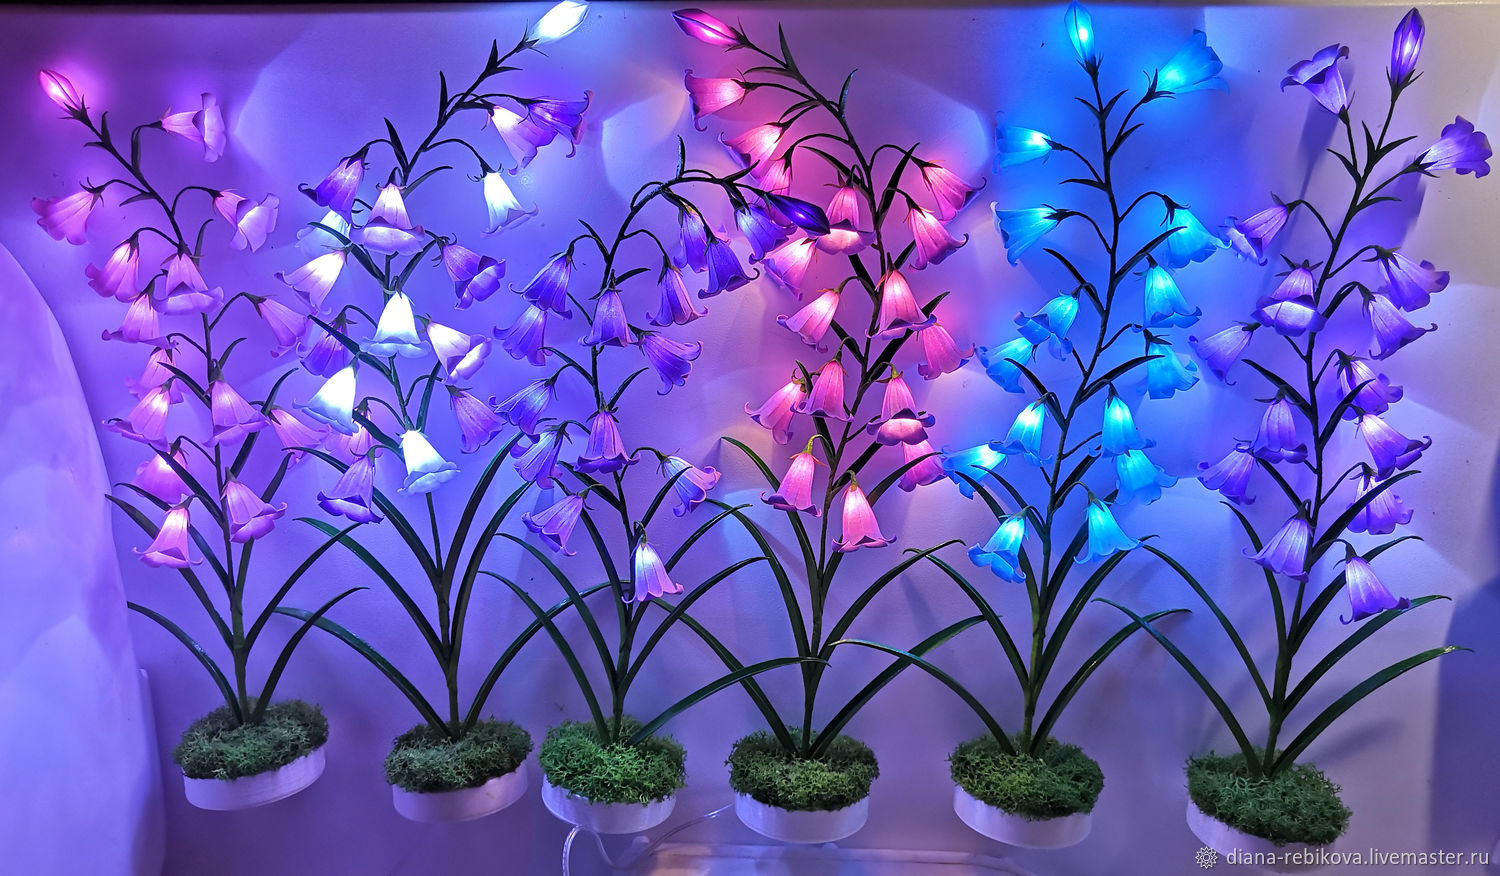 Как освещать комнатные растения? Интенсивность света и адаптация к потребностям растений